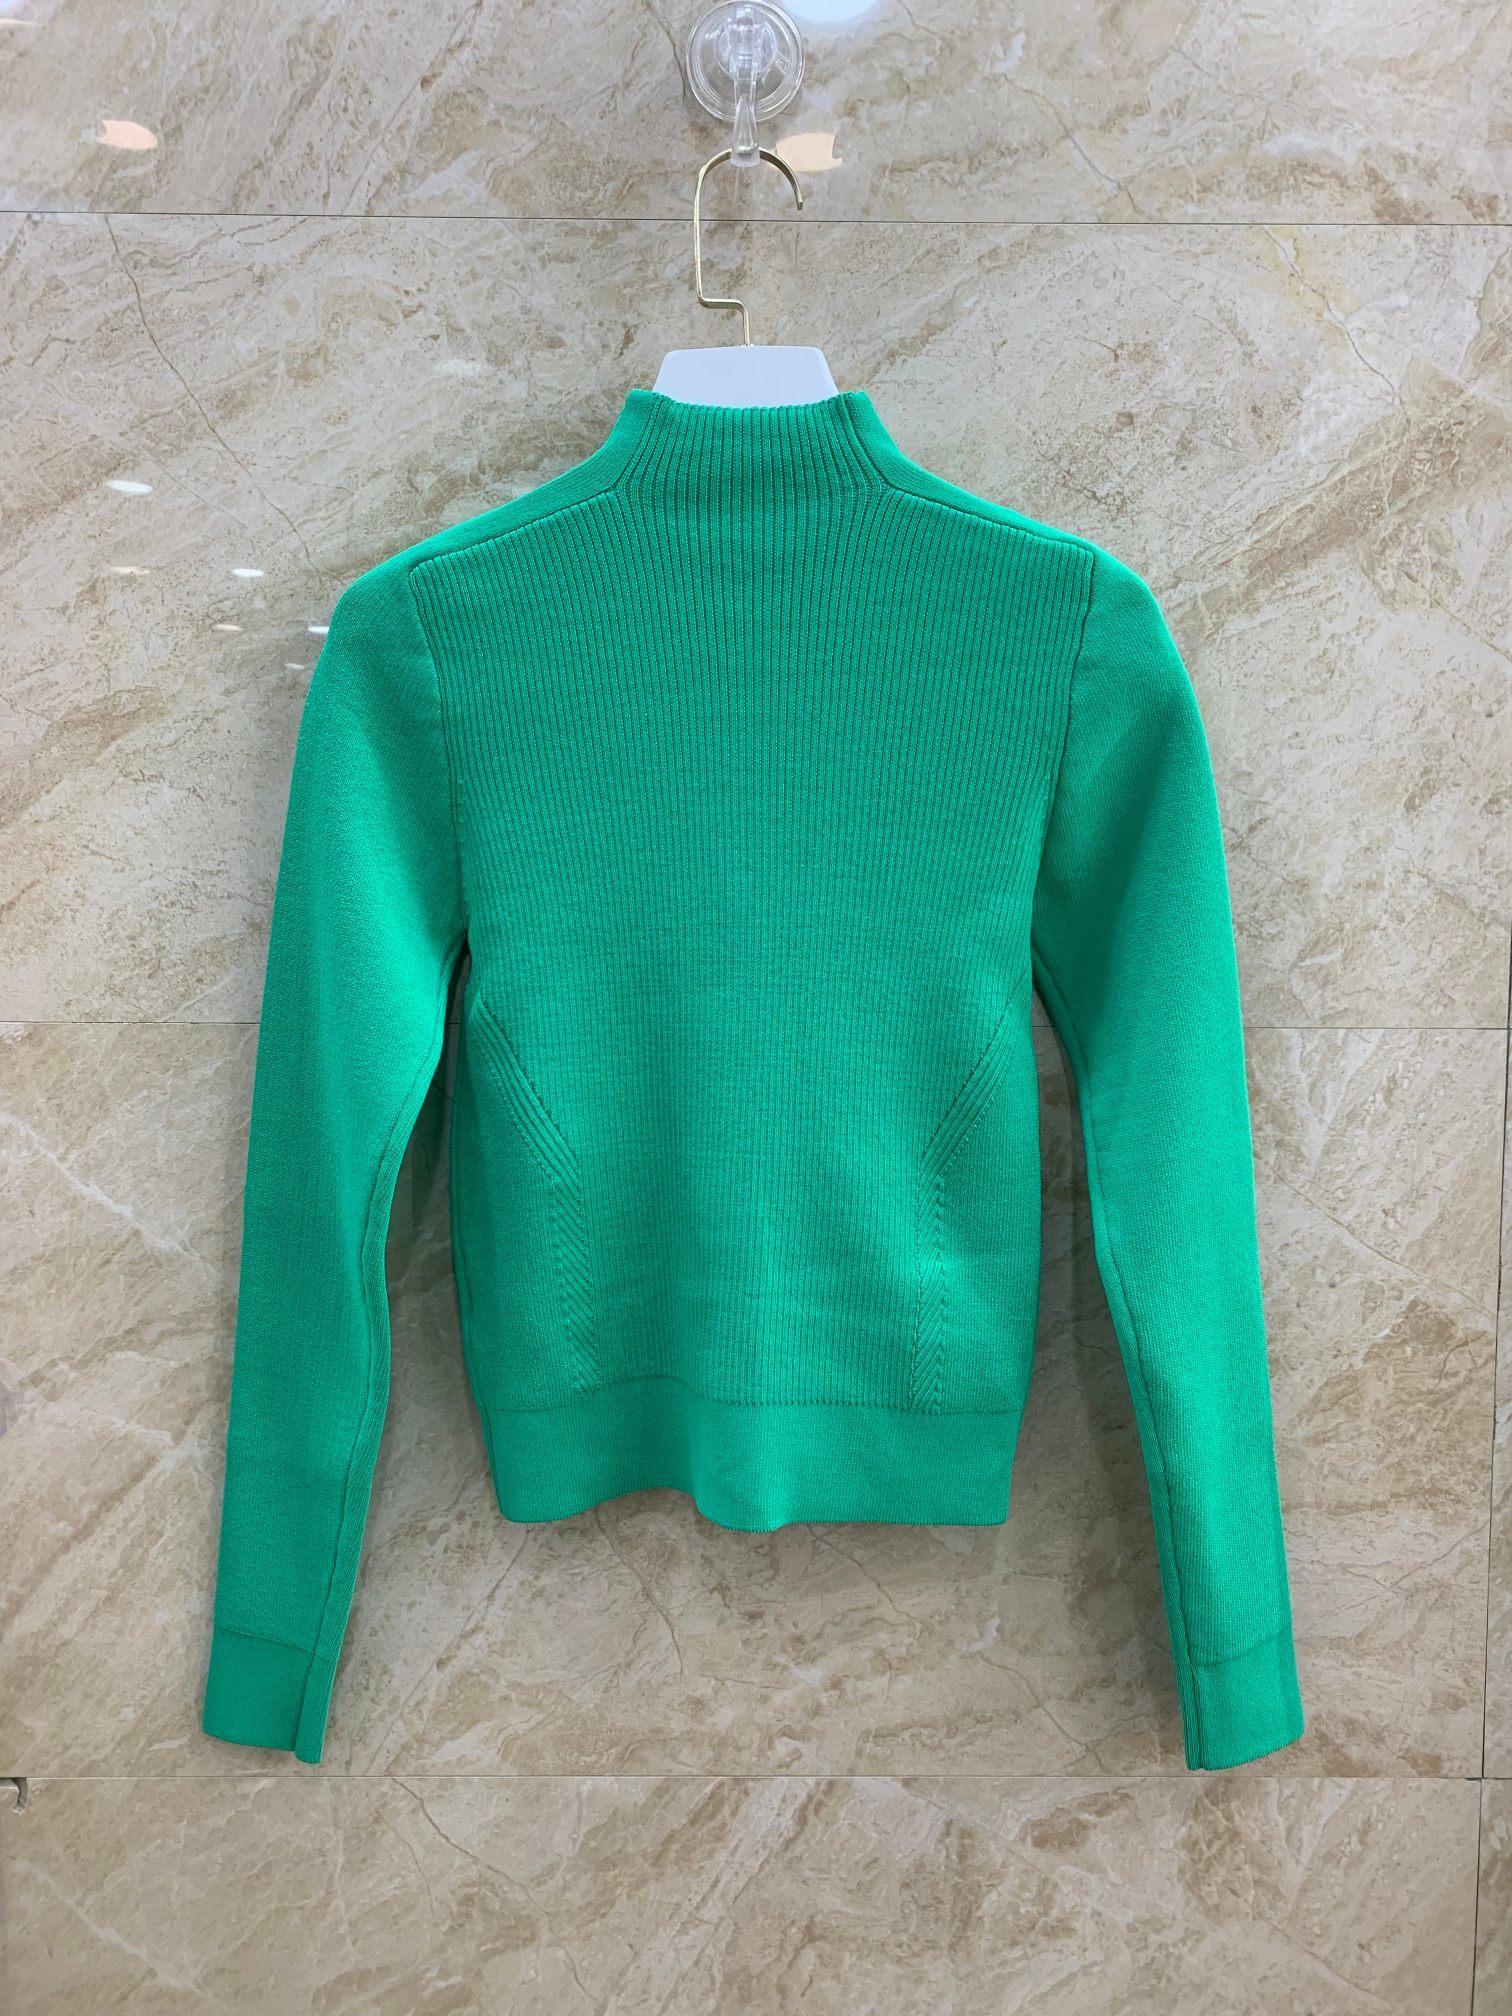 Короткий свитер в рубчик с длинными рукавами фото 2